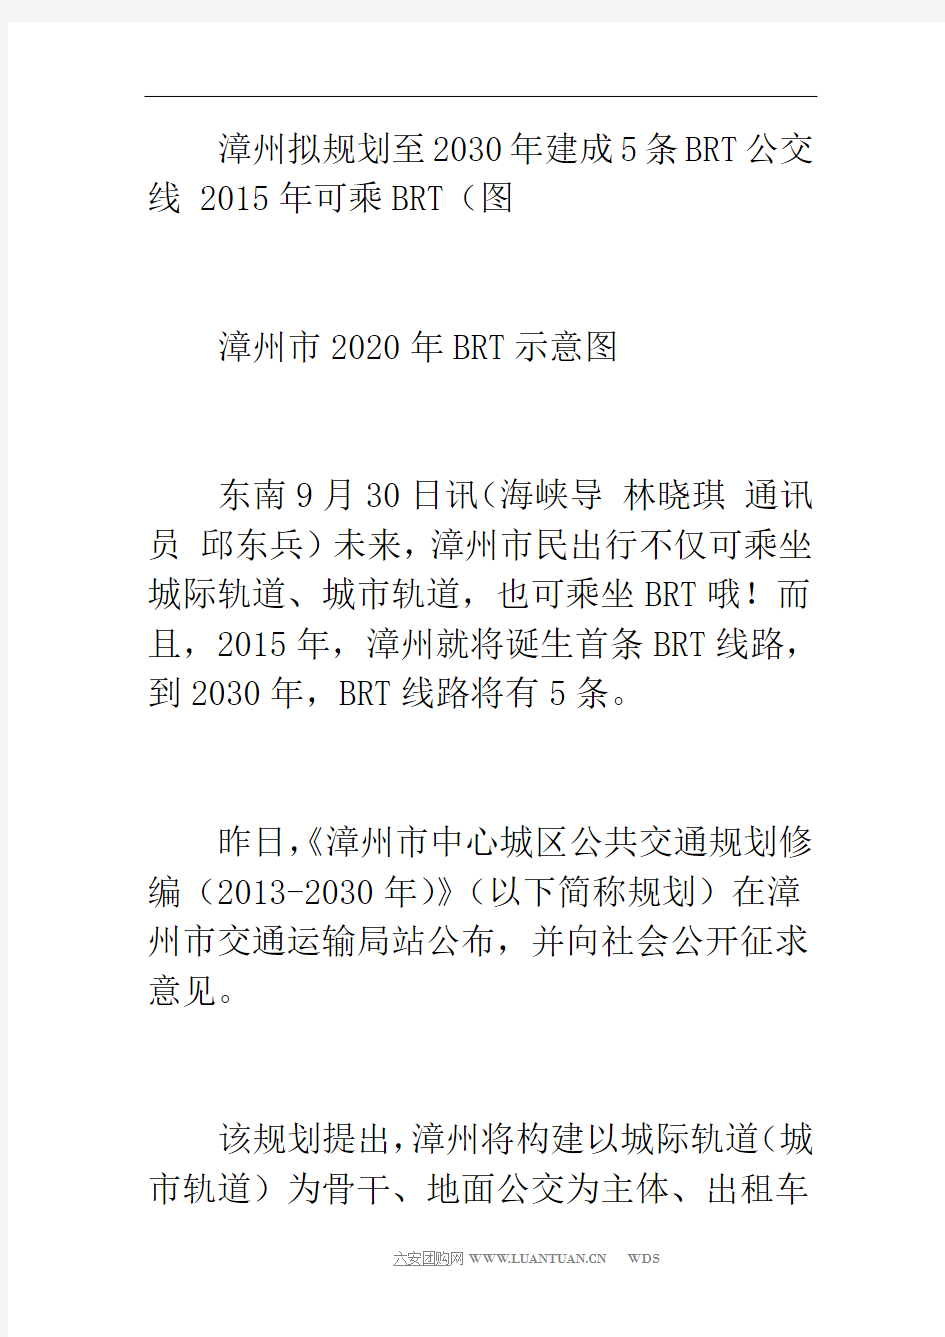 漳州拟规划至2030年建成5条brt公交线 2015年可乘brt(图)